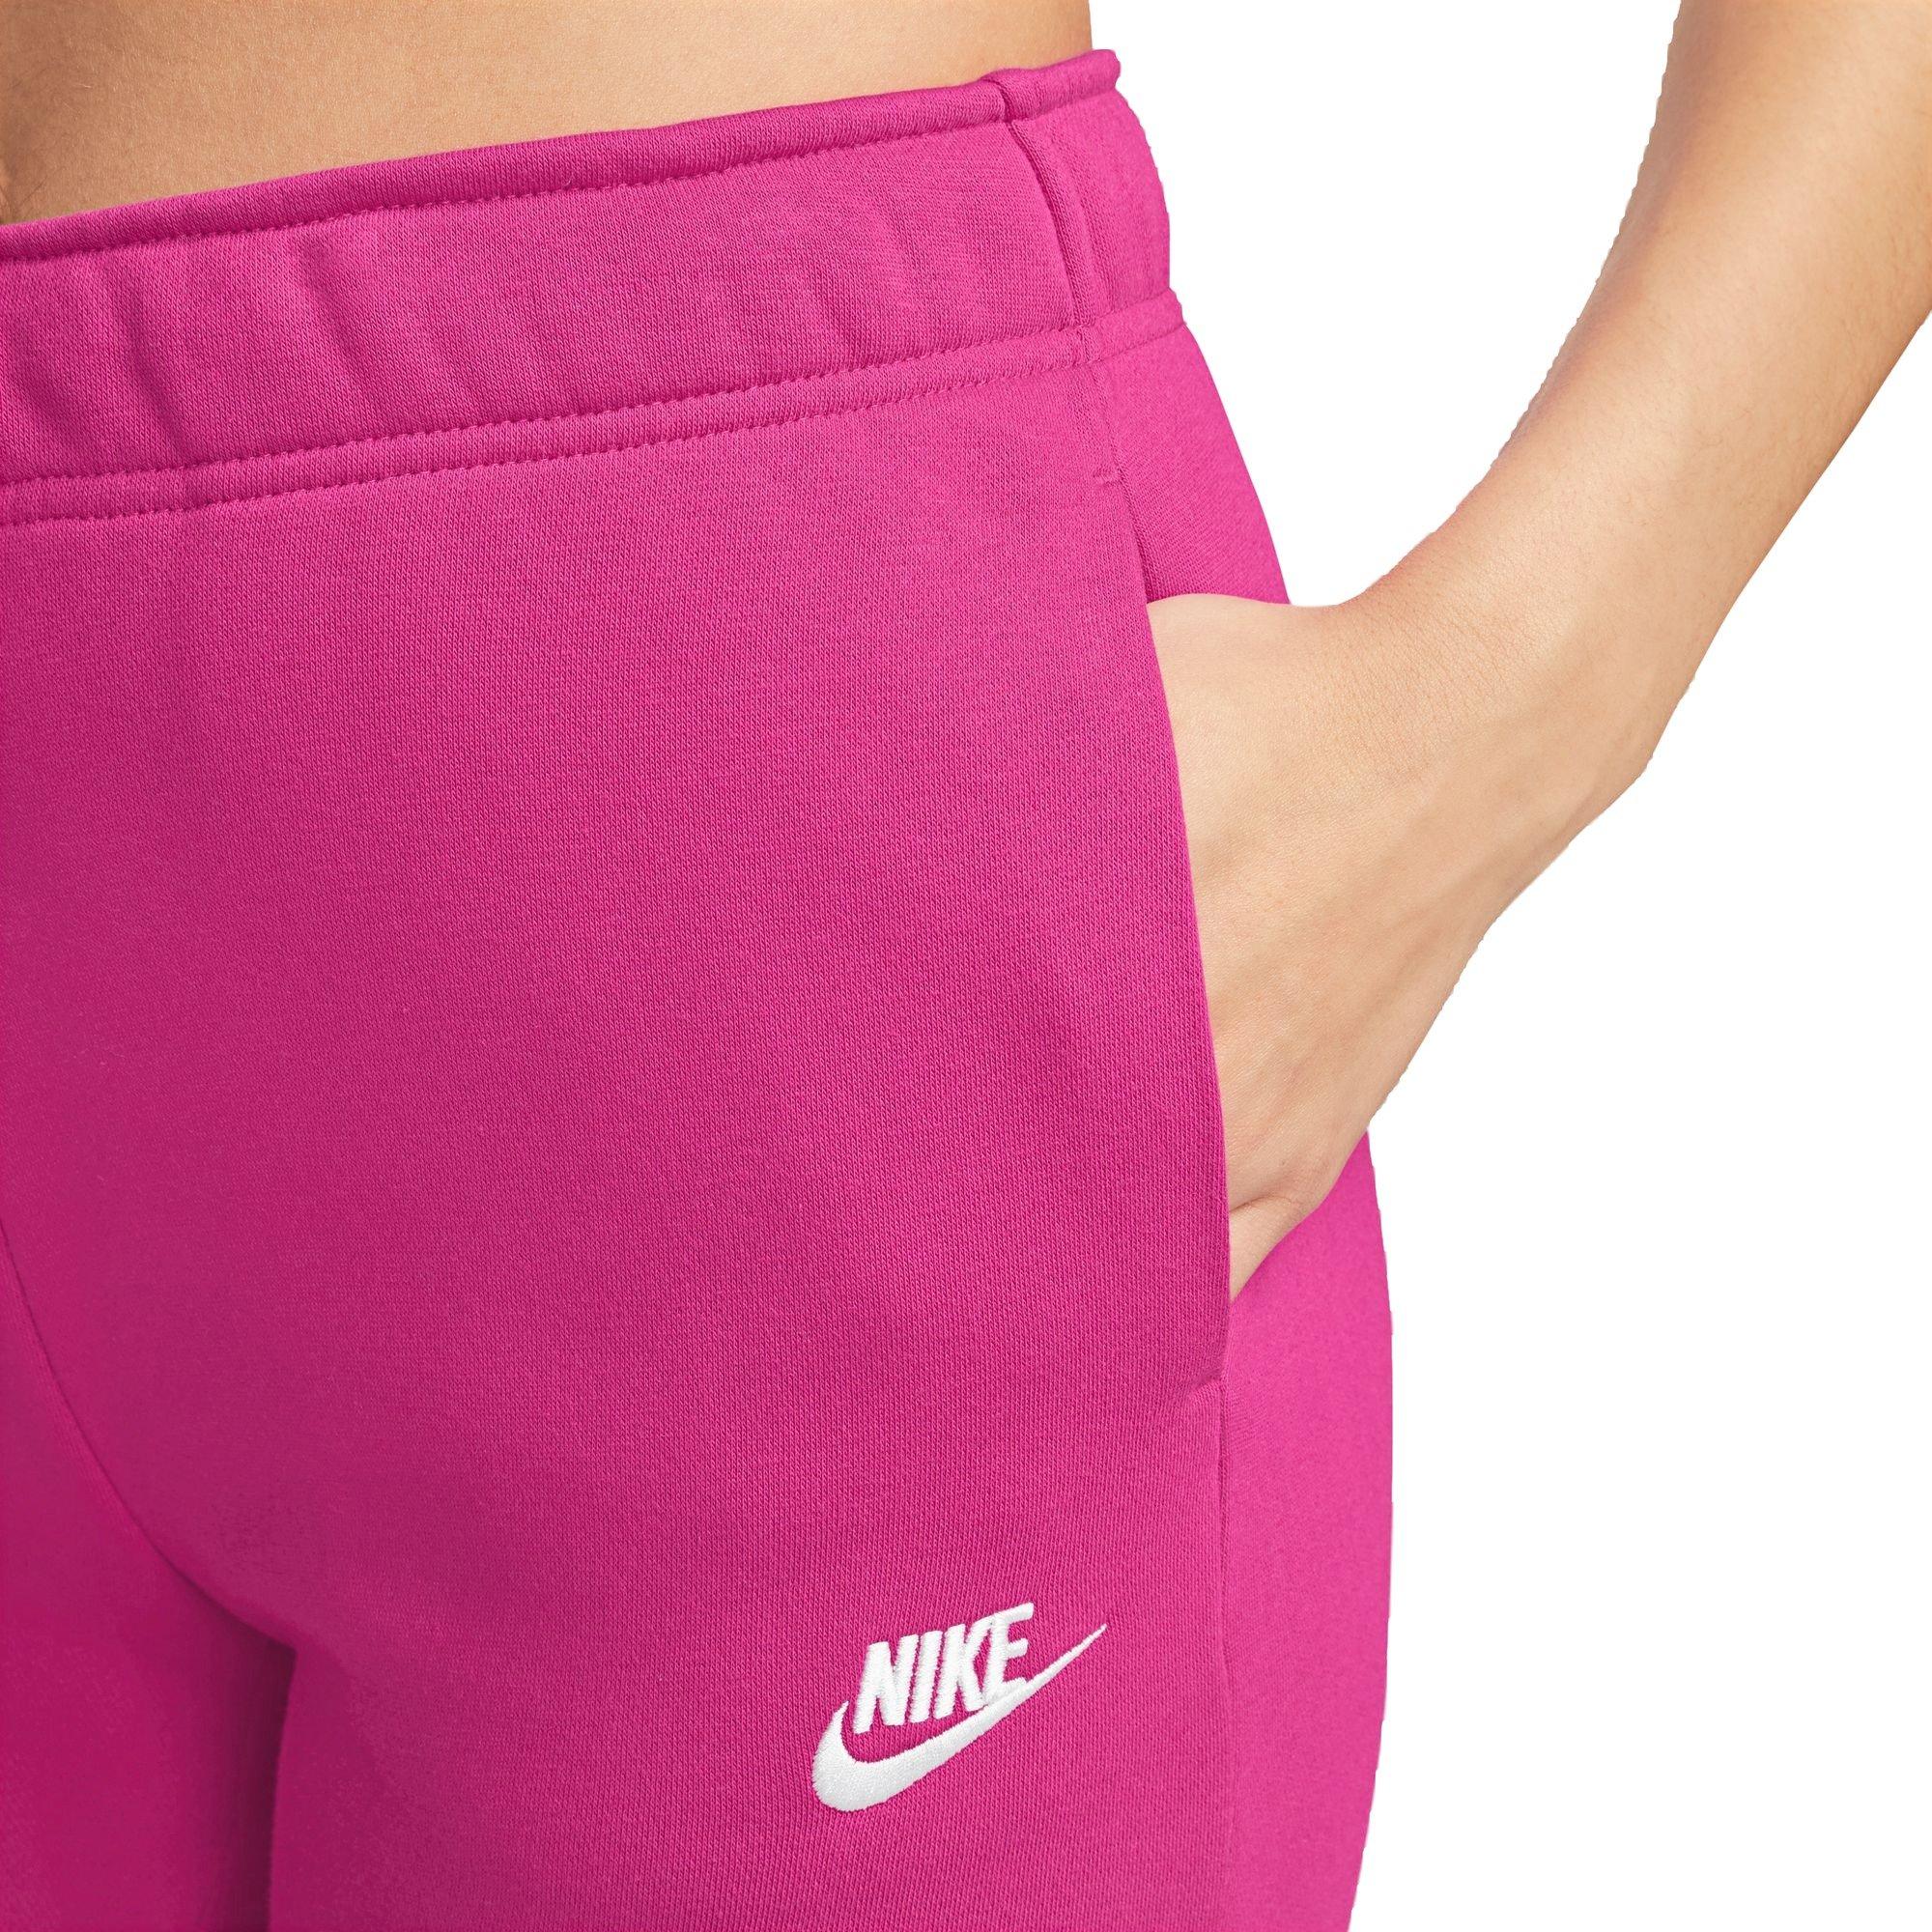 Nike Sportswear Club Fleece Women's Mid-Rise Slim Joggers, Pink